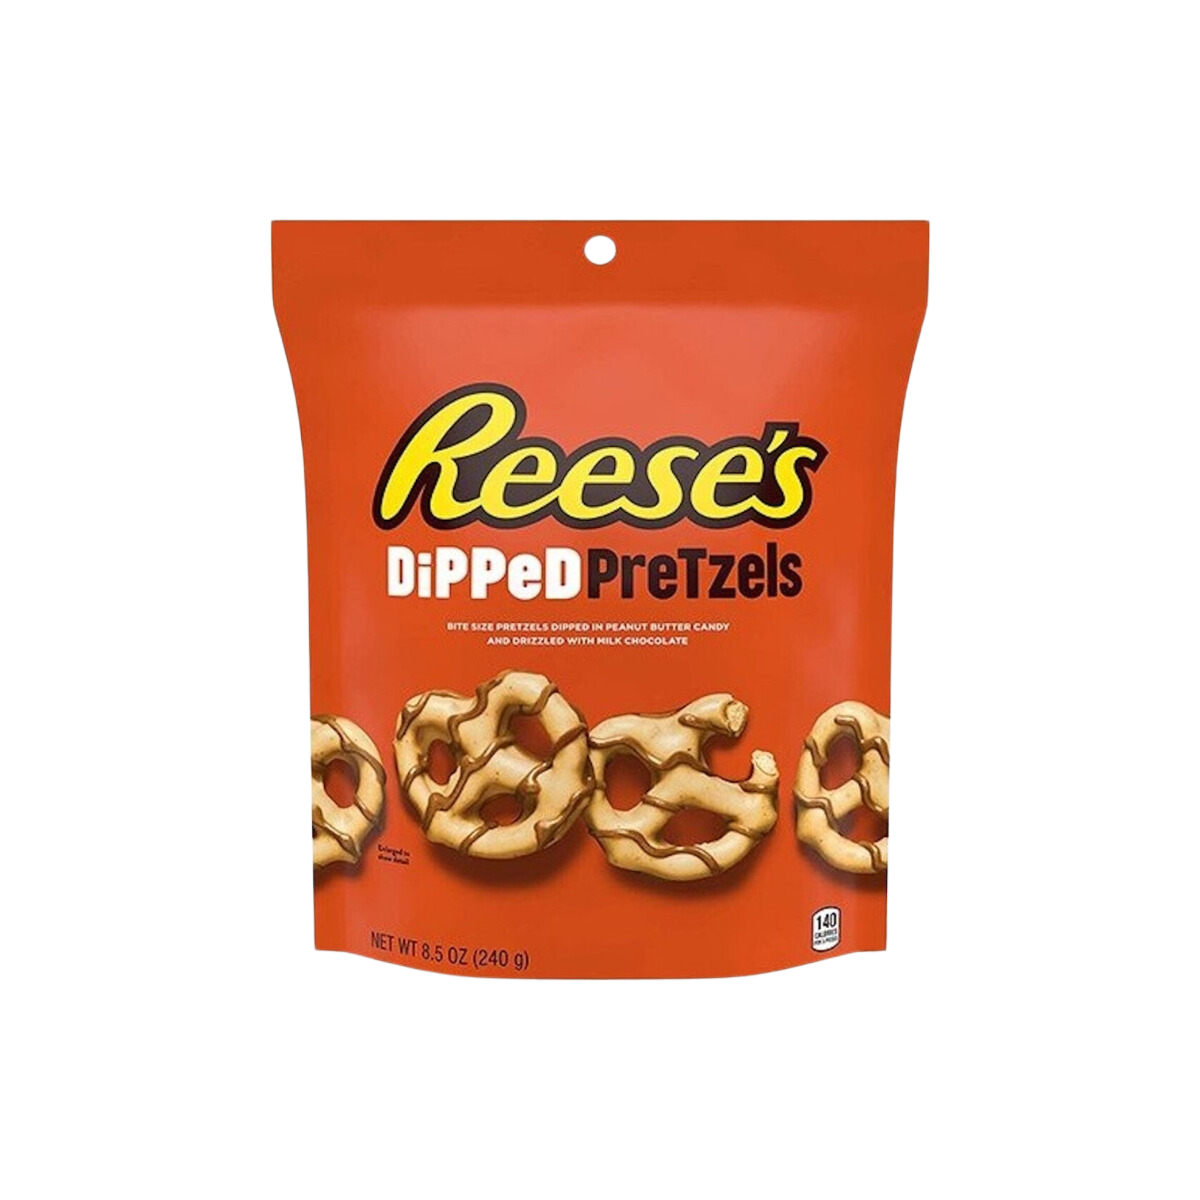 Reeses Dipped Pretzels